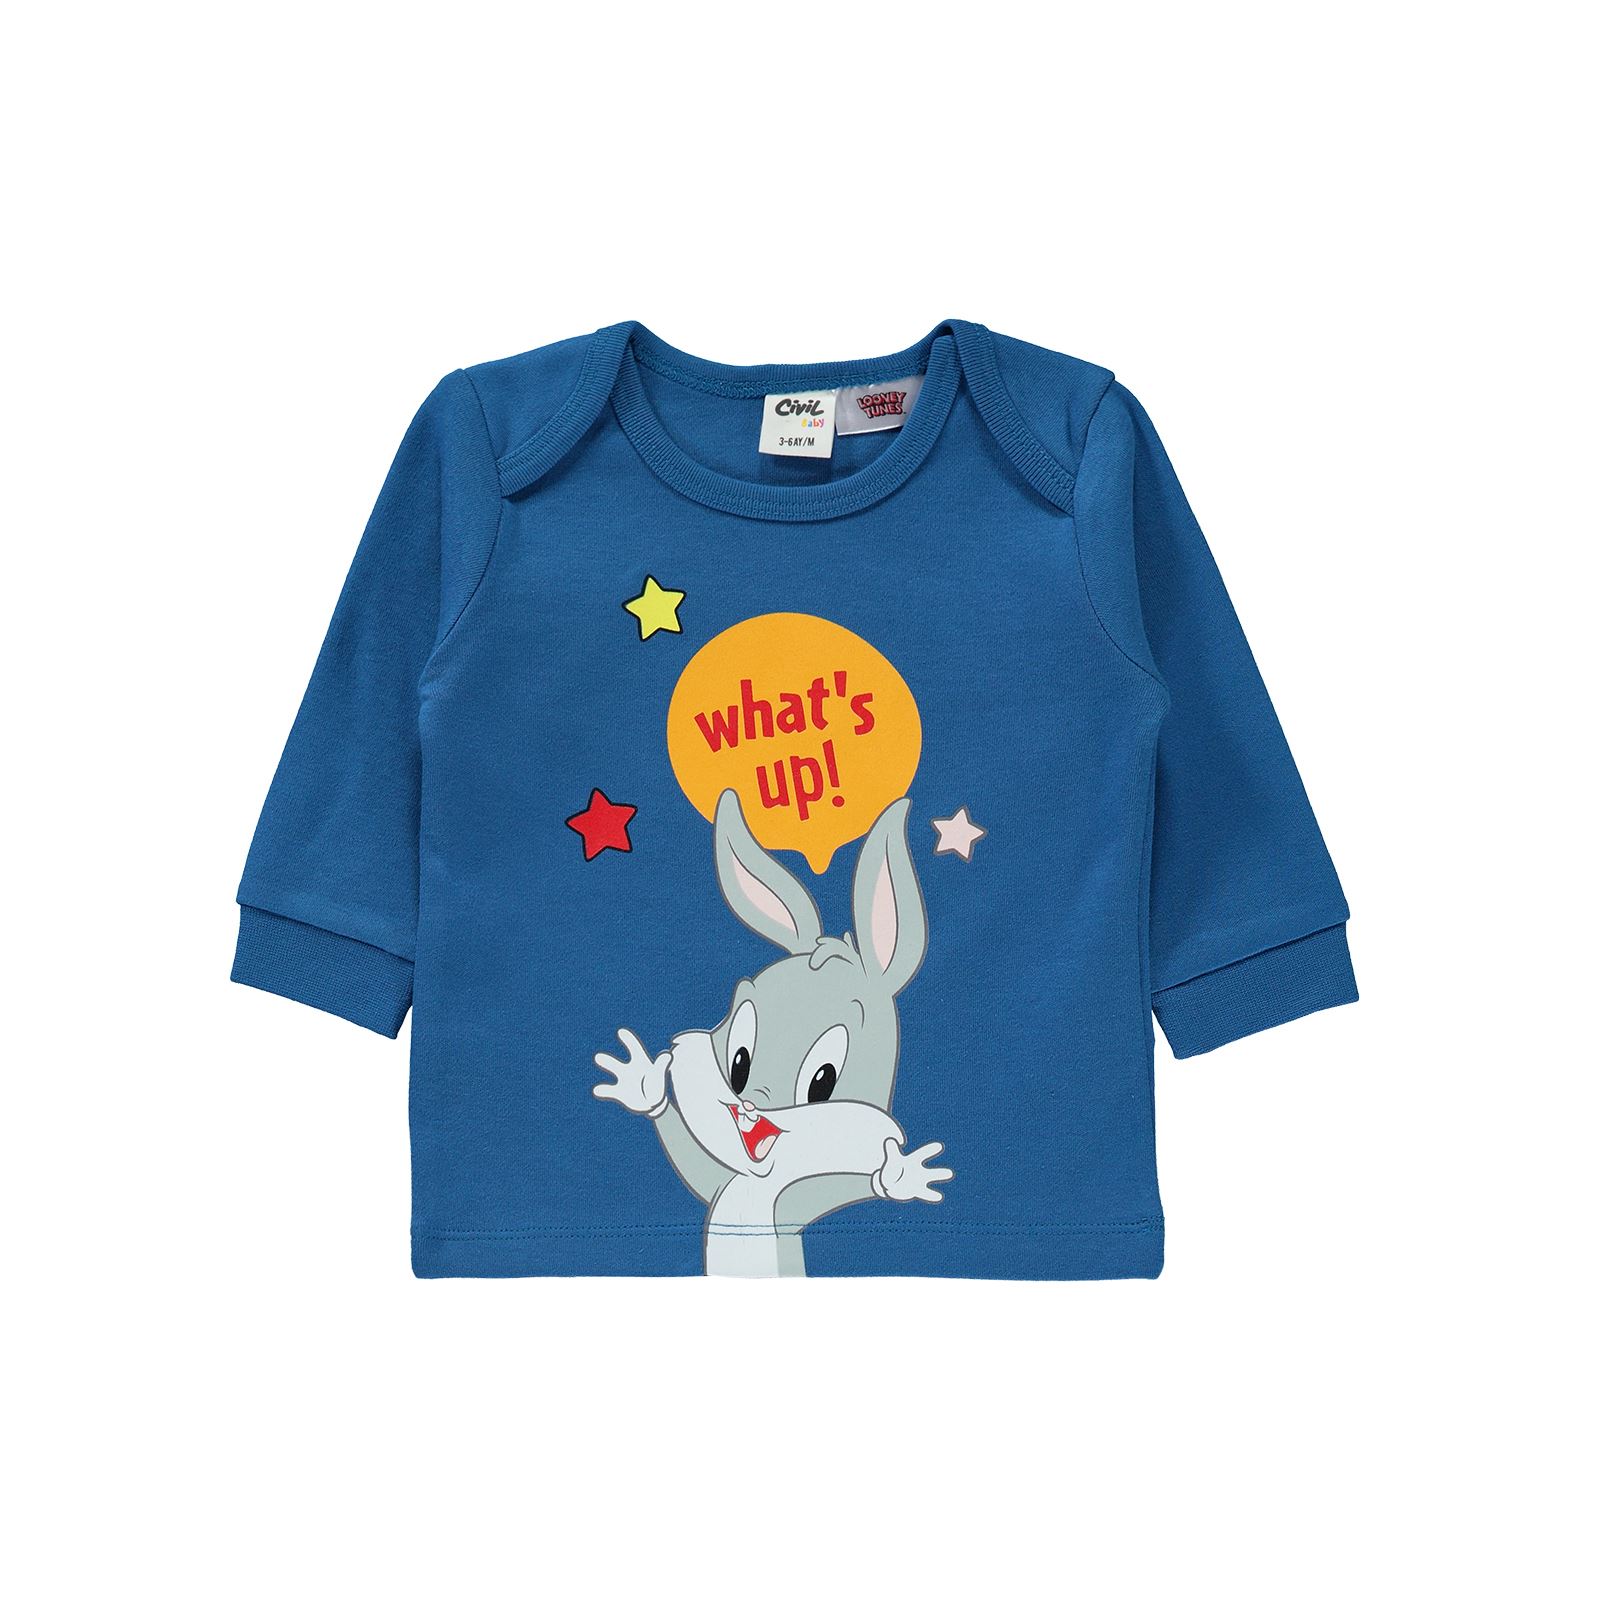 Bugs Bunny Erkek Bebek Takım 3-6 Ay Mavi